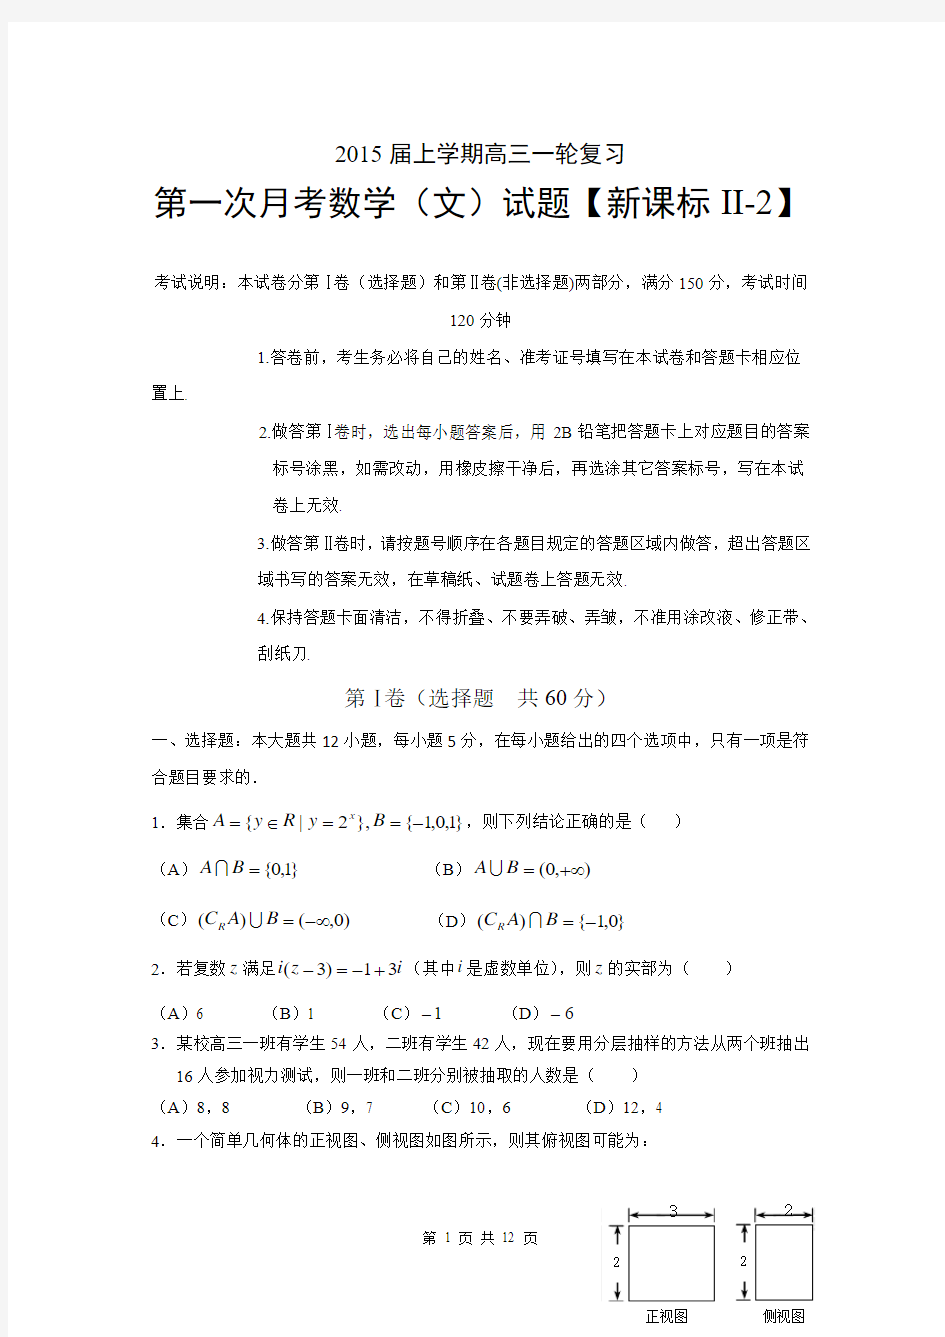 【新课标Ⅱ-2】2015届高三上学期月考(1)数学(文)试题 Word版含答案